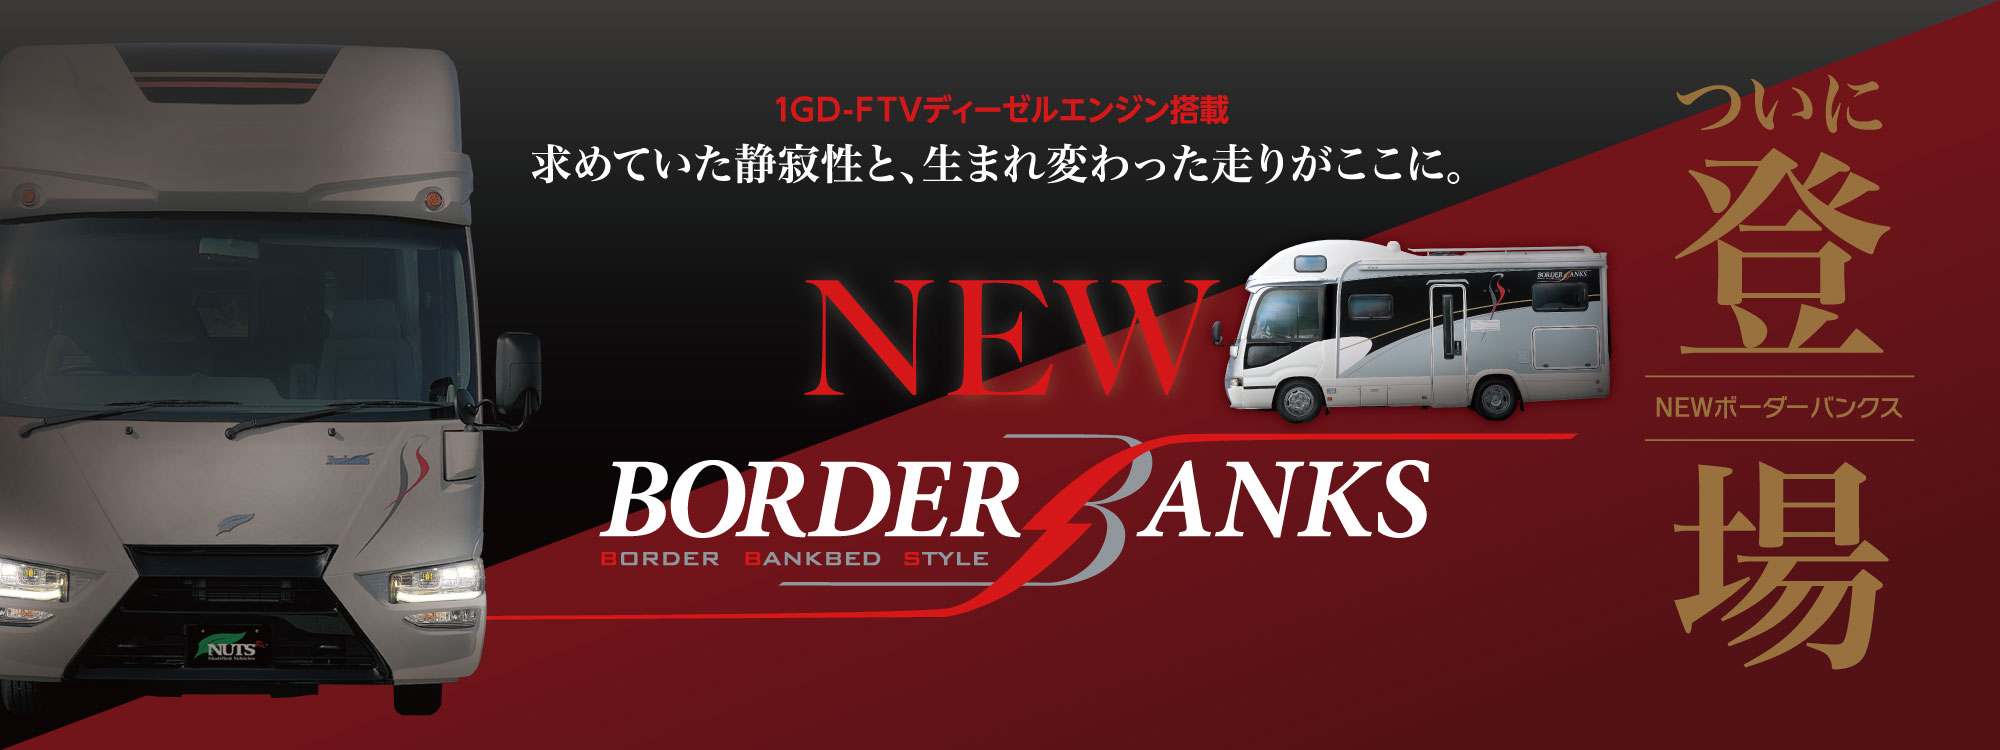 ナッツのフラッグシップモデルキャンピングカー「ボーダーバンクス-BORDER BANKS-」